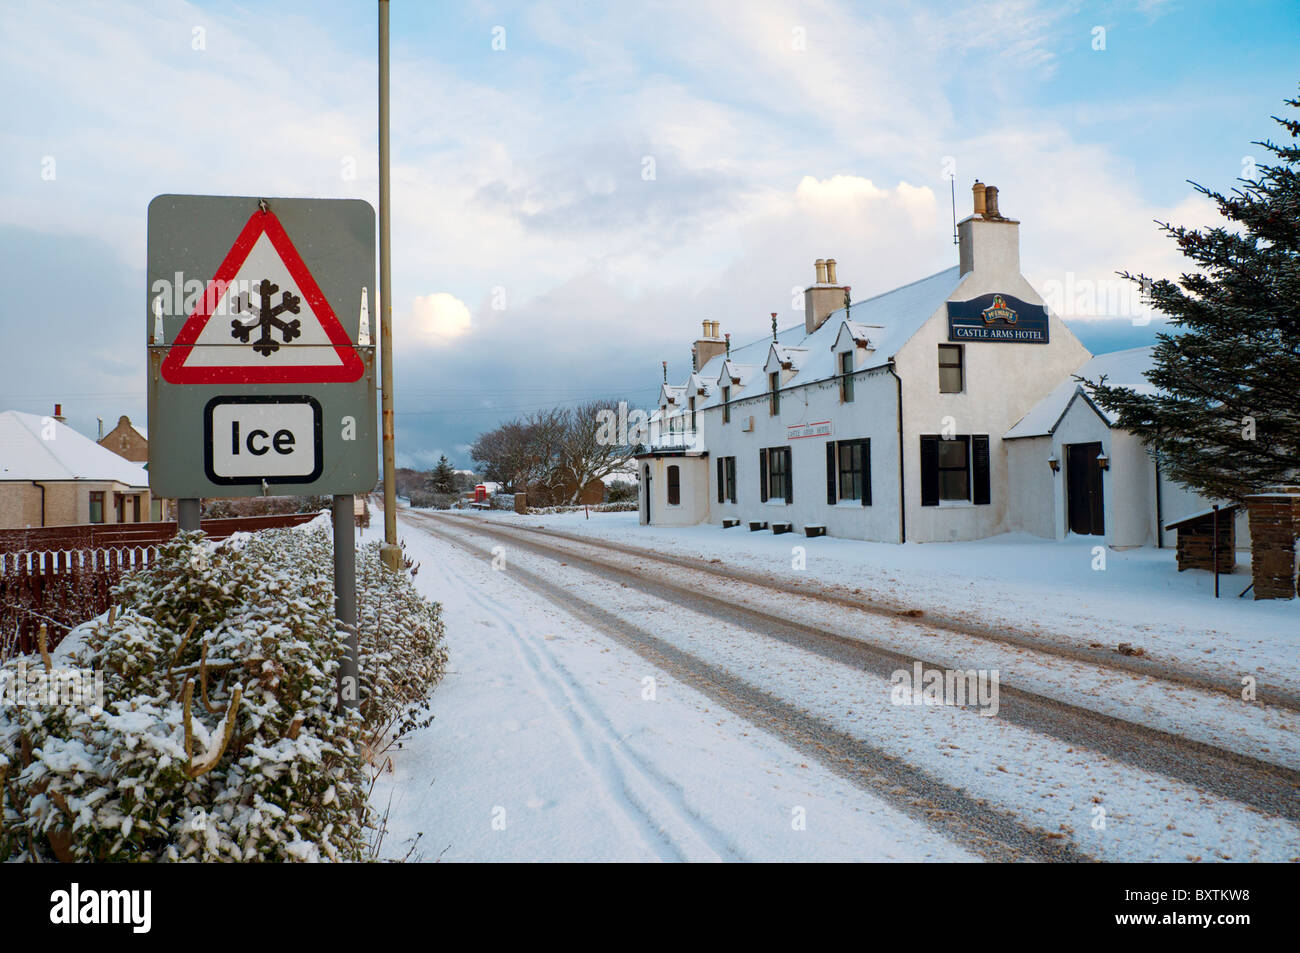 El principal signo en Thurso a John o'Groats road, el A836, cubiertas de nieve en invierno. En la aldea de Mey, Caithness, Escocia, Reino Unido Foto de stock